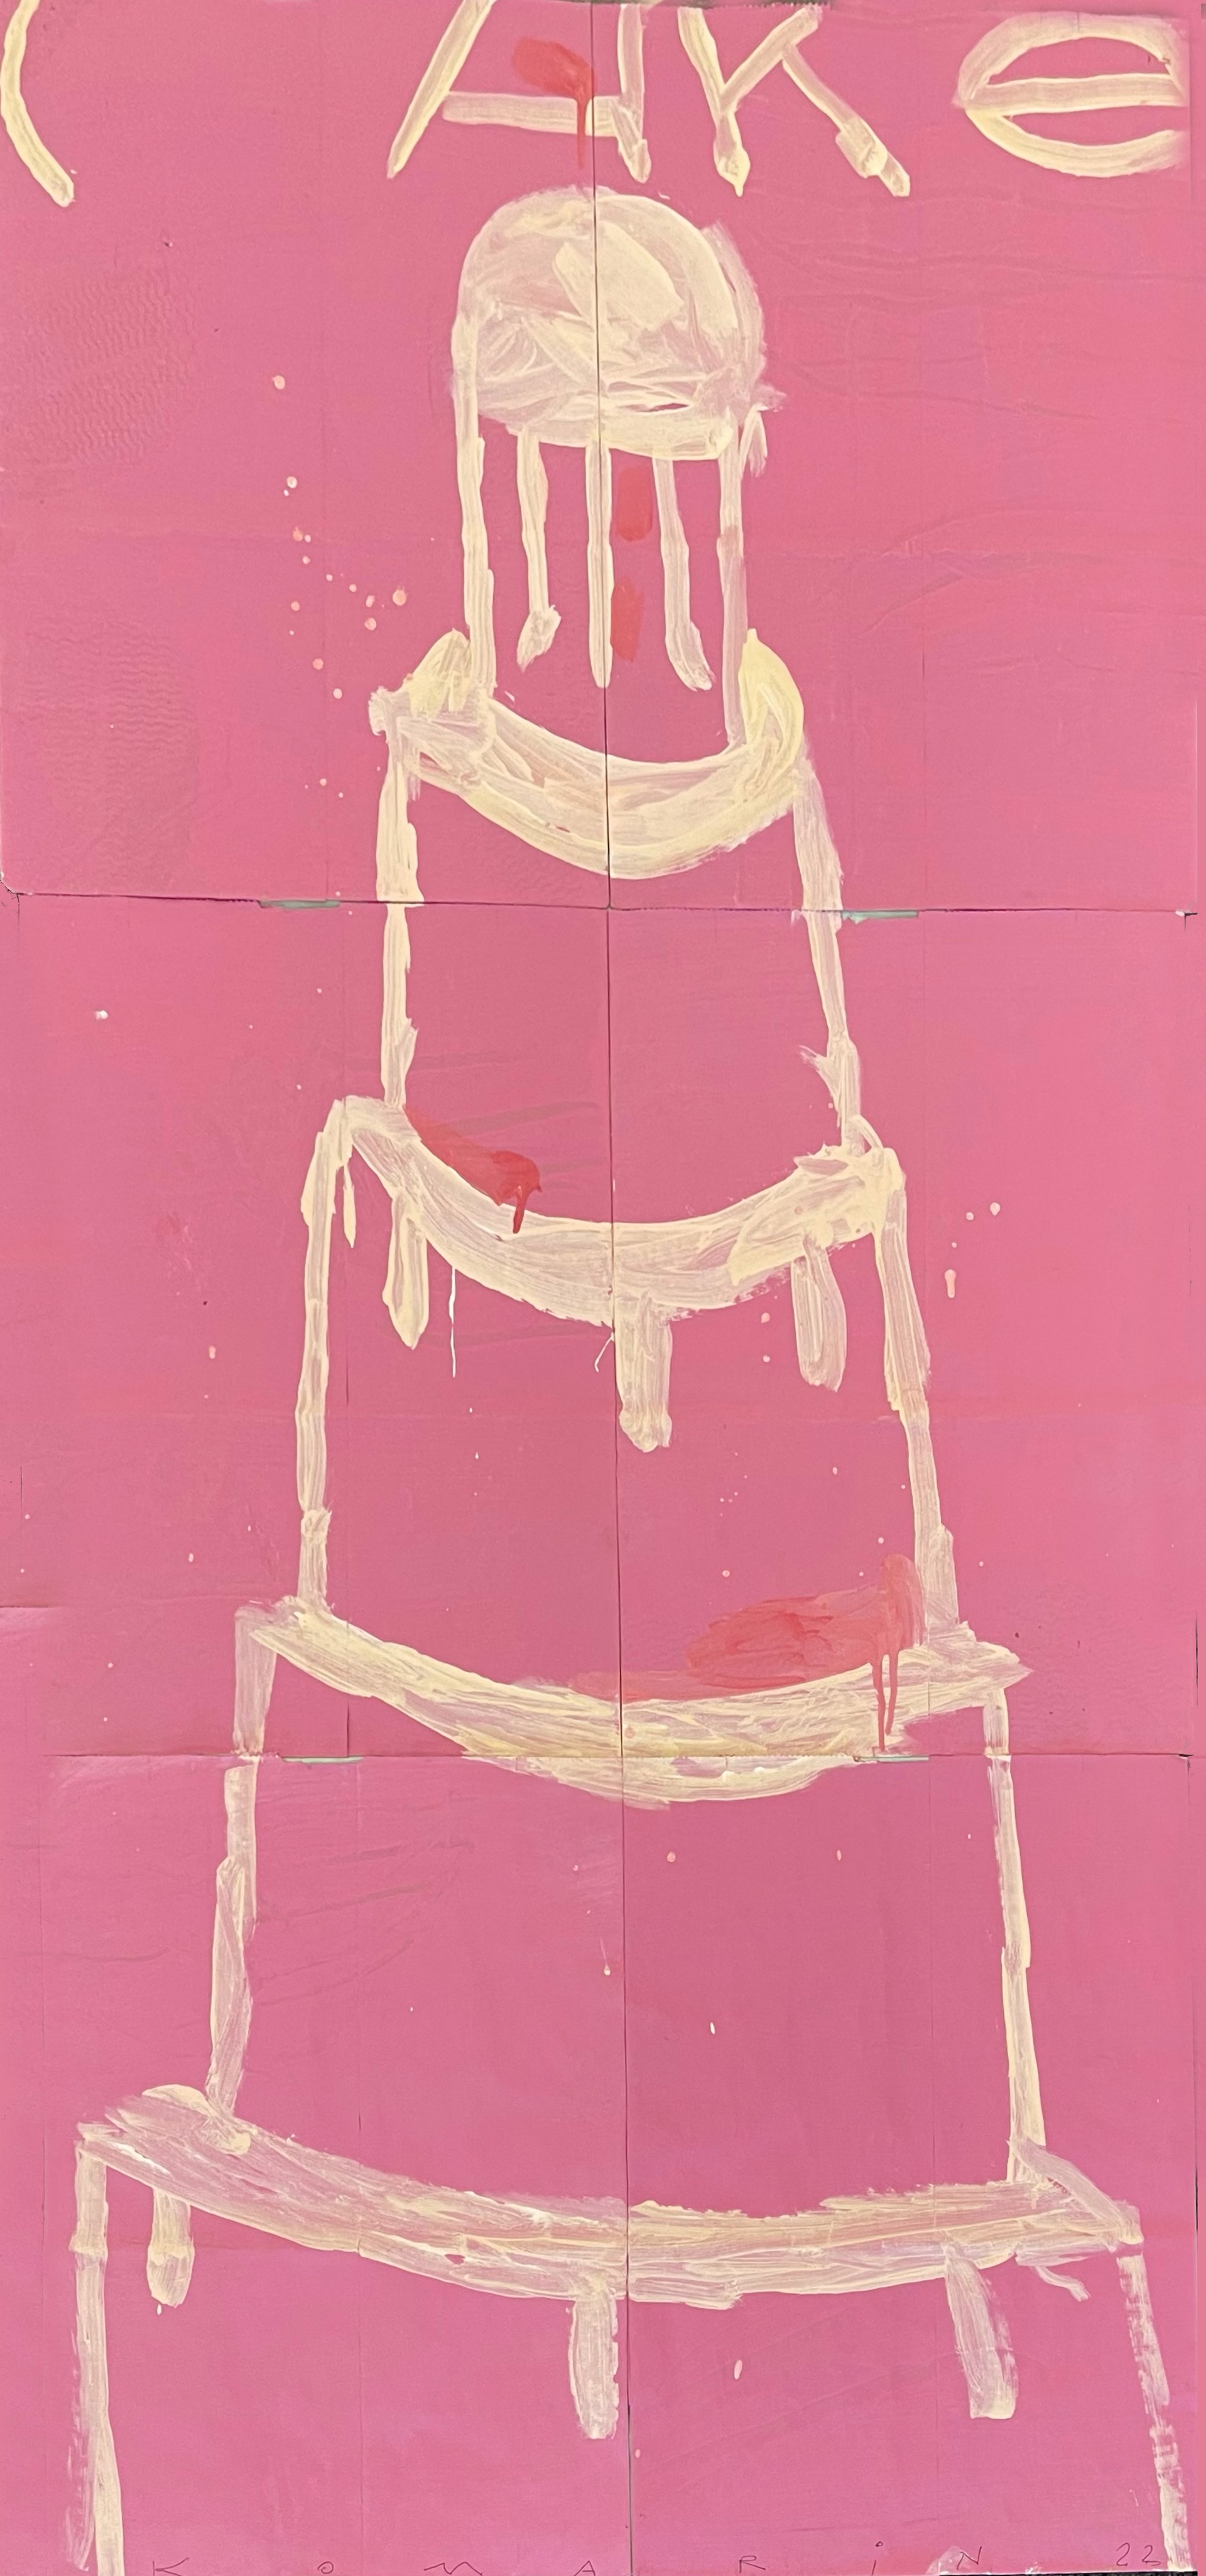 Creme on Pink by Gary Komarin